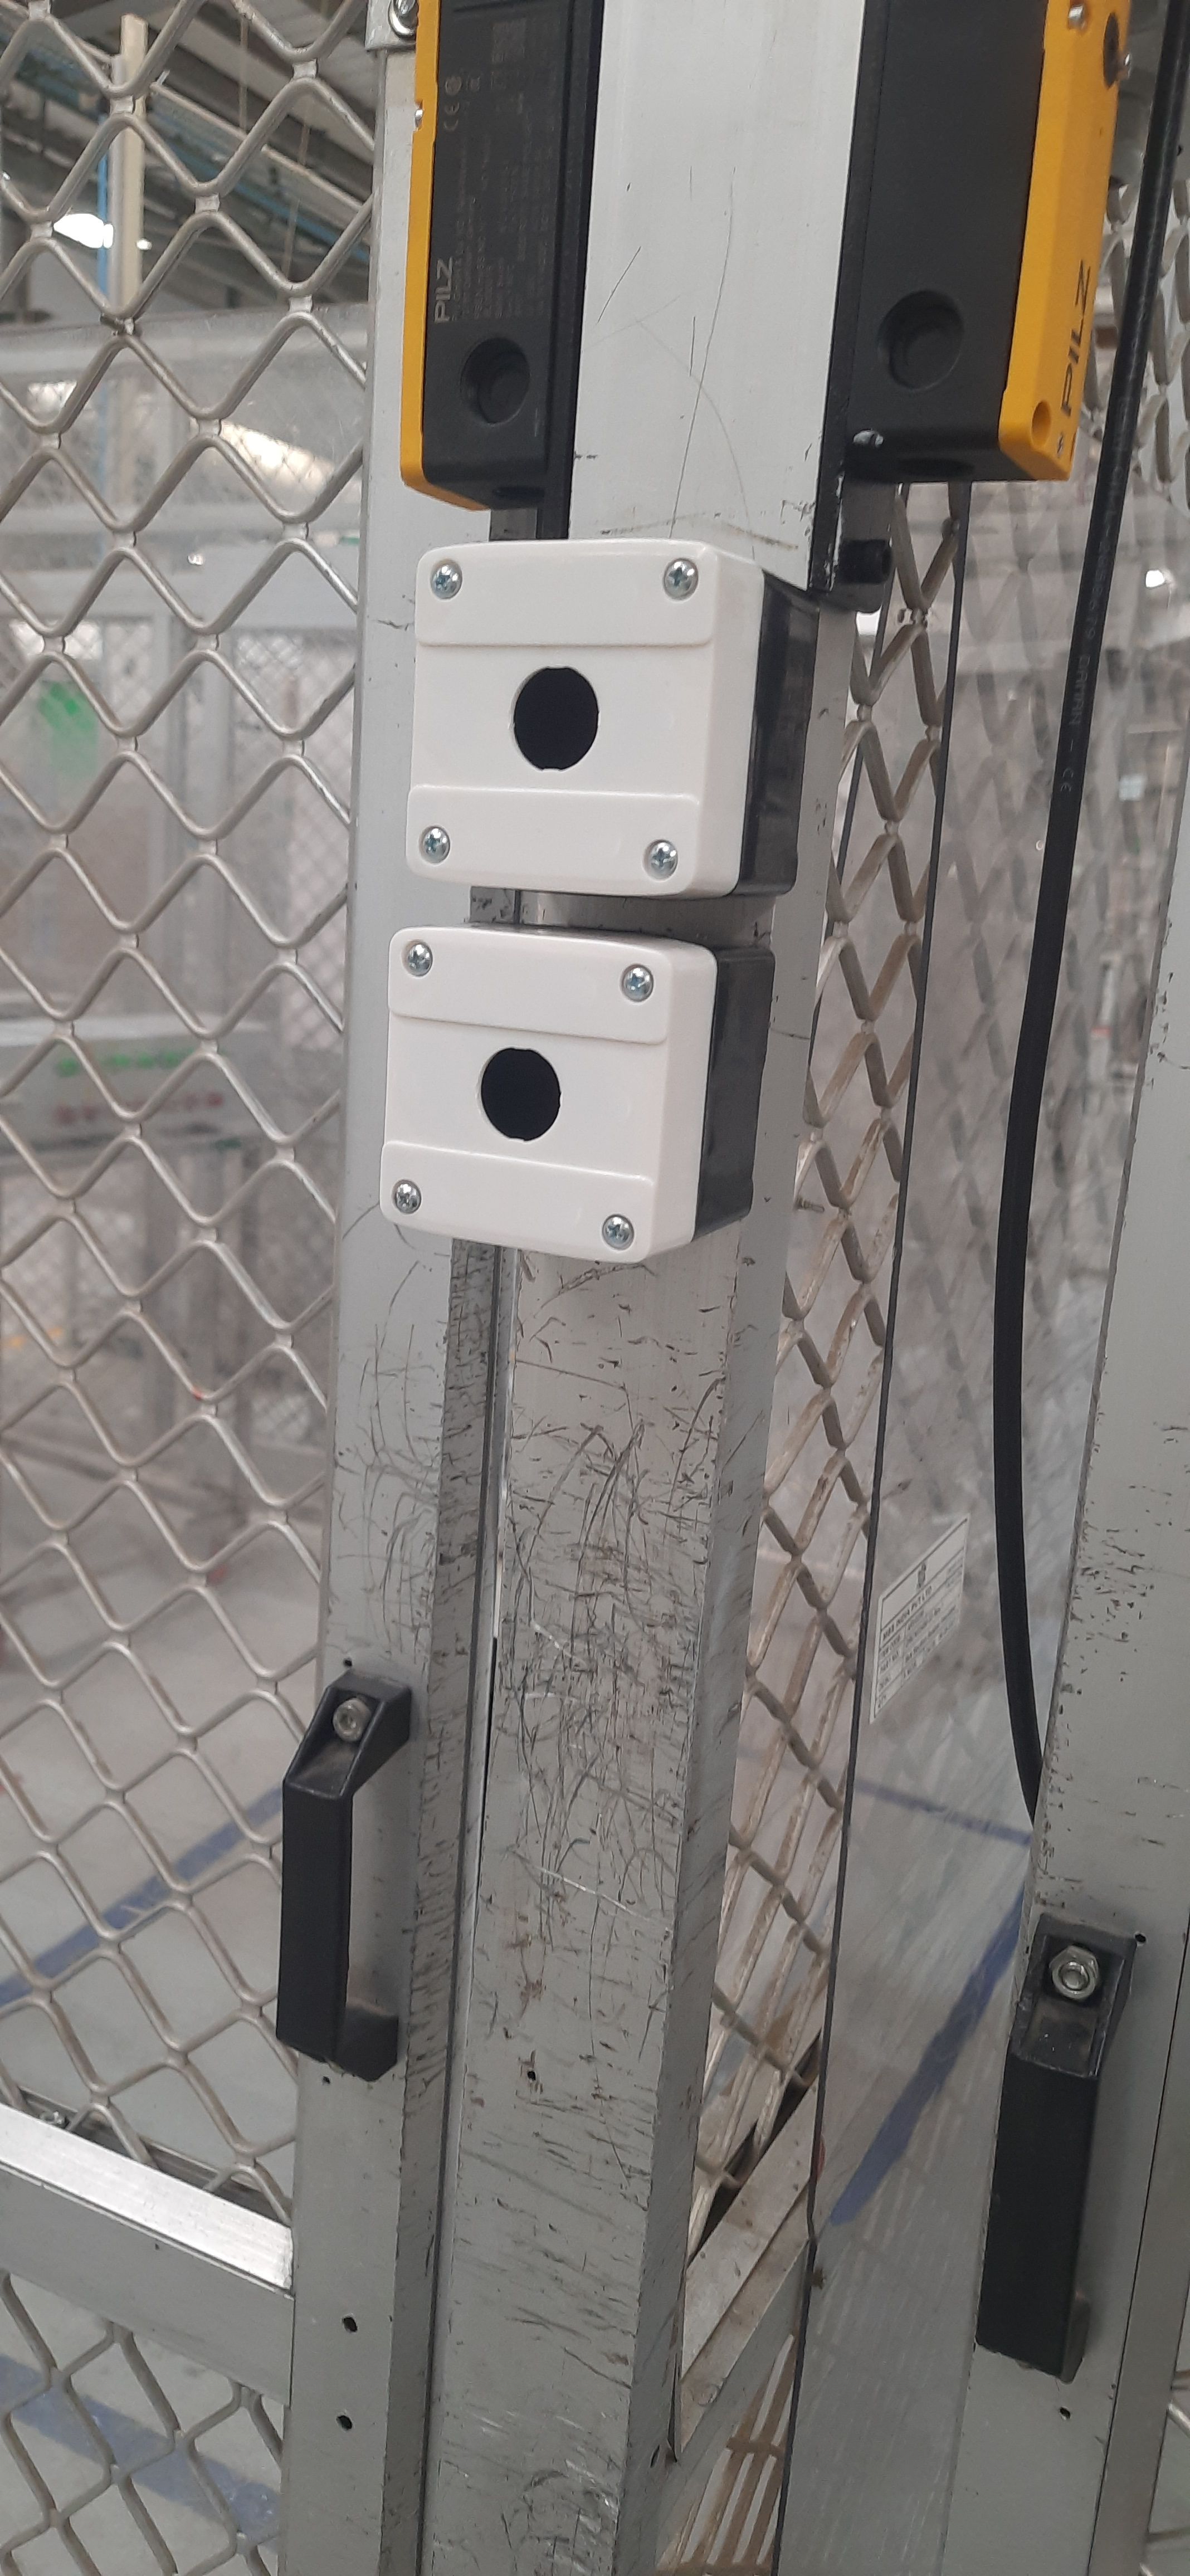 Interlocking Door Safety Switch